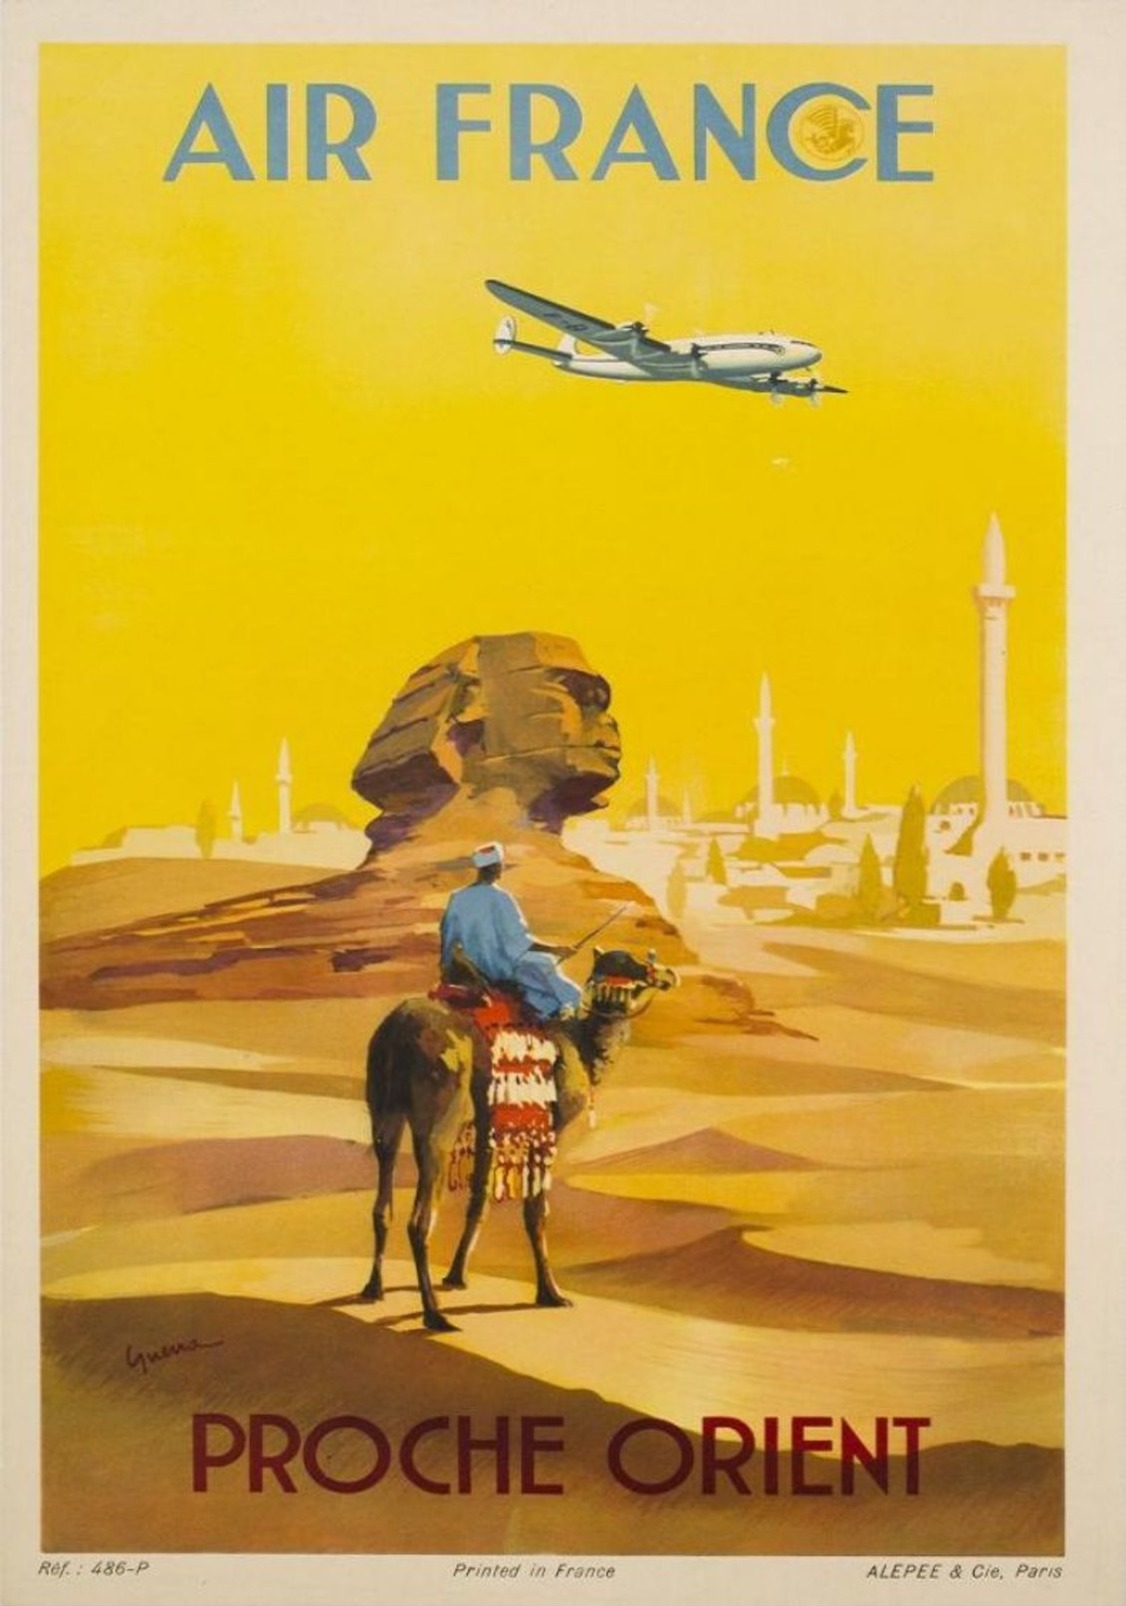 Air France Proche Orient Egypt 1948 - Postcard - Poster Reproduction - Publicité